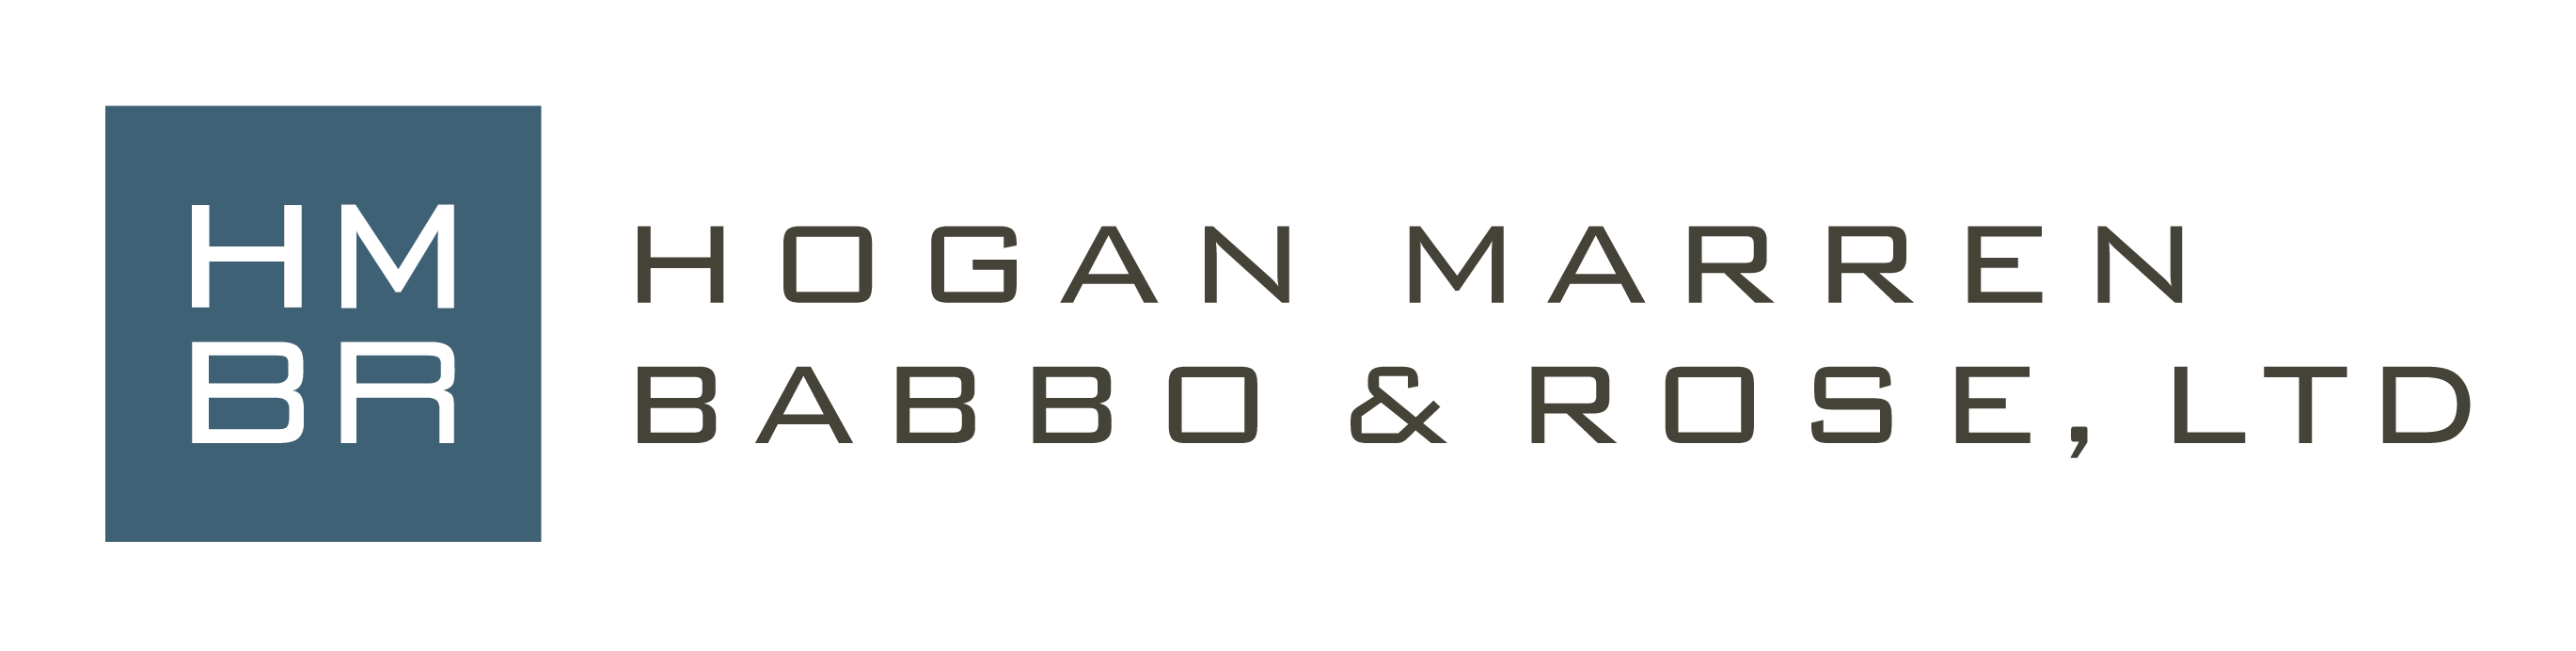 Hogan Marren Babbo & Rose, Ltd.